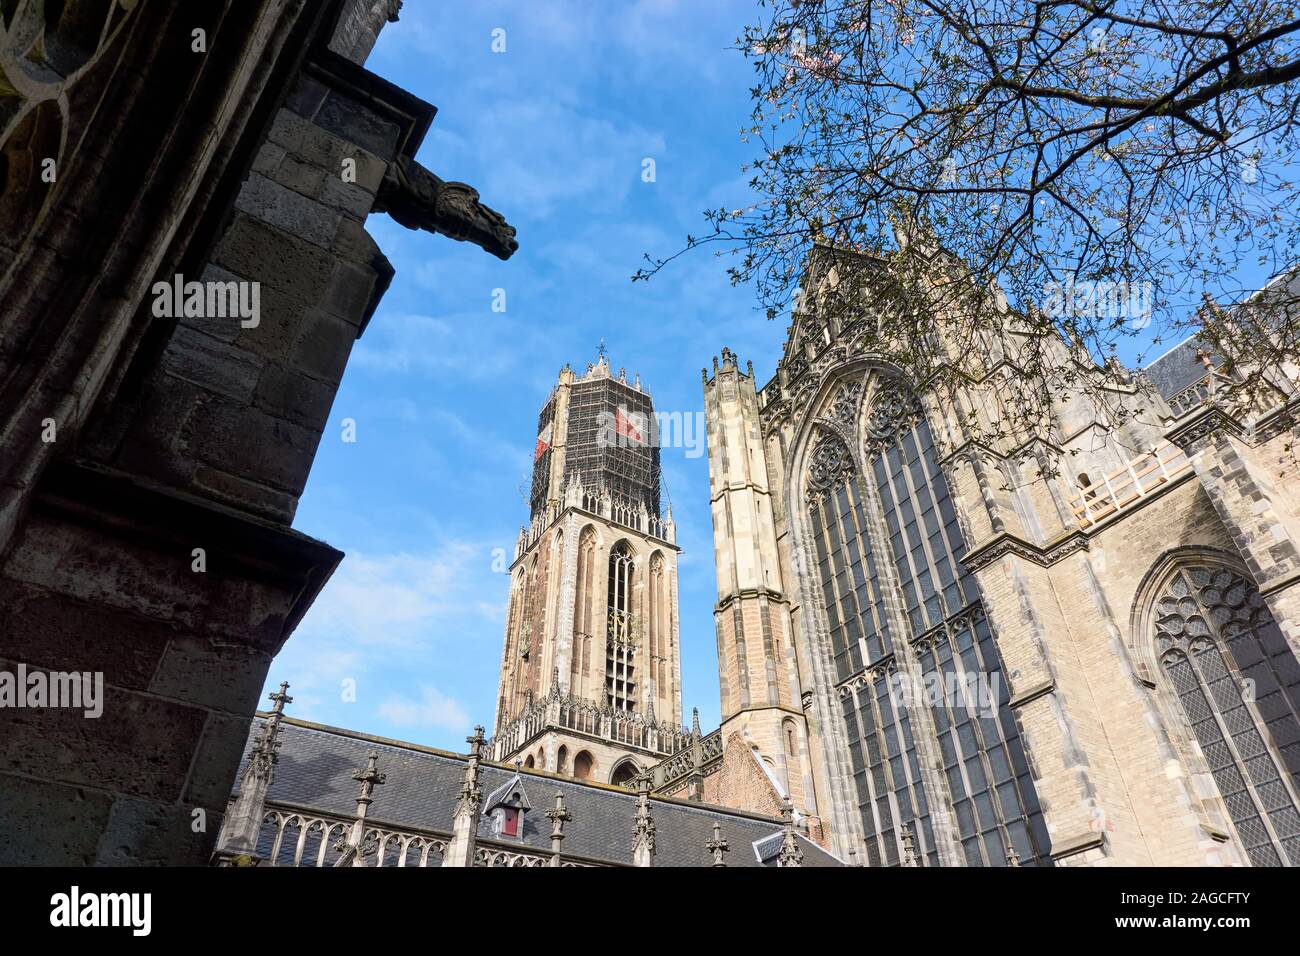 La Chiesa del Duomo e la torre di Dom in Utrecht nei Paesi Bassi. Sulla torre ponteggio a causa di lavori di restauro e di rosso bianco i colori della città di Utrecht. Foto Stock